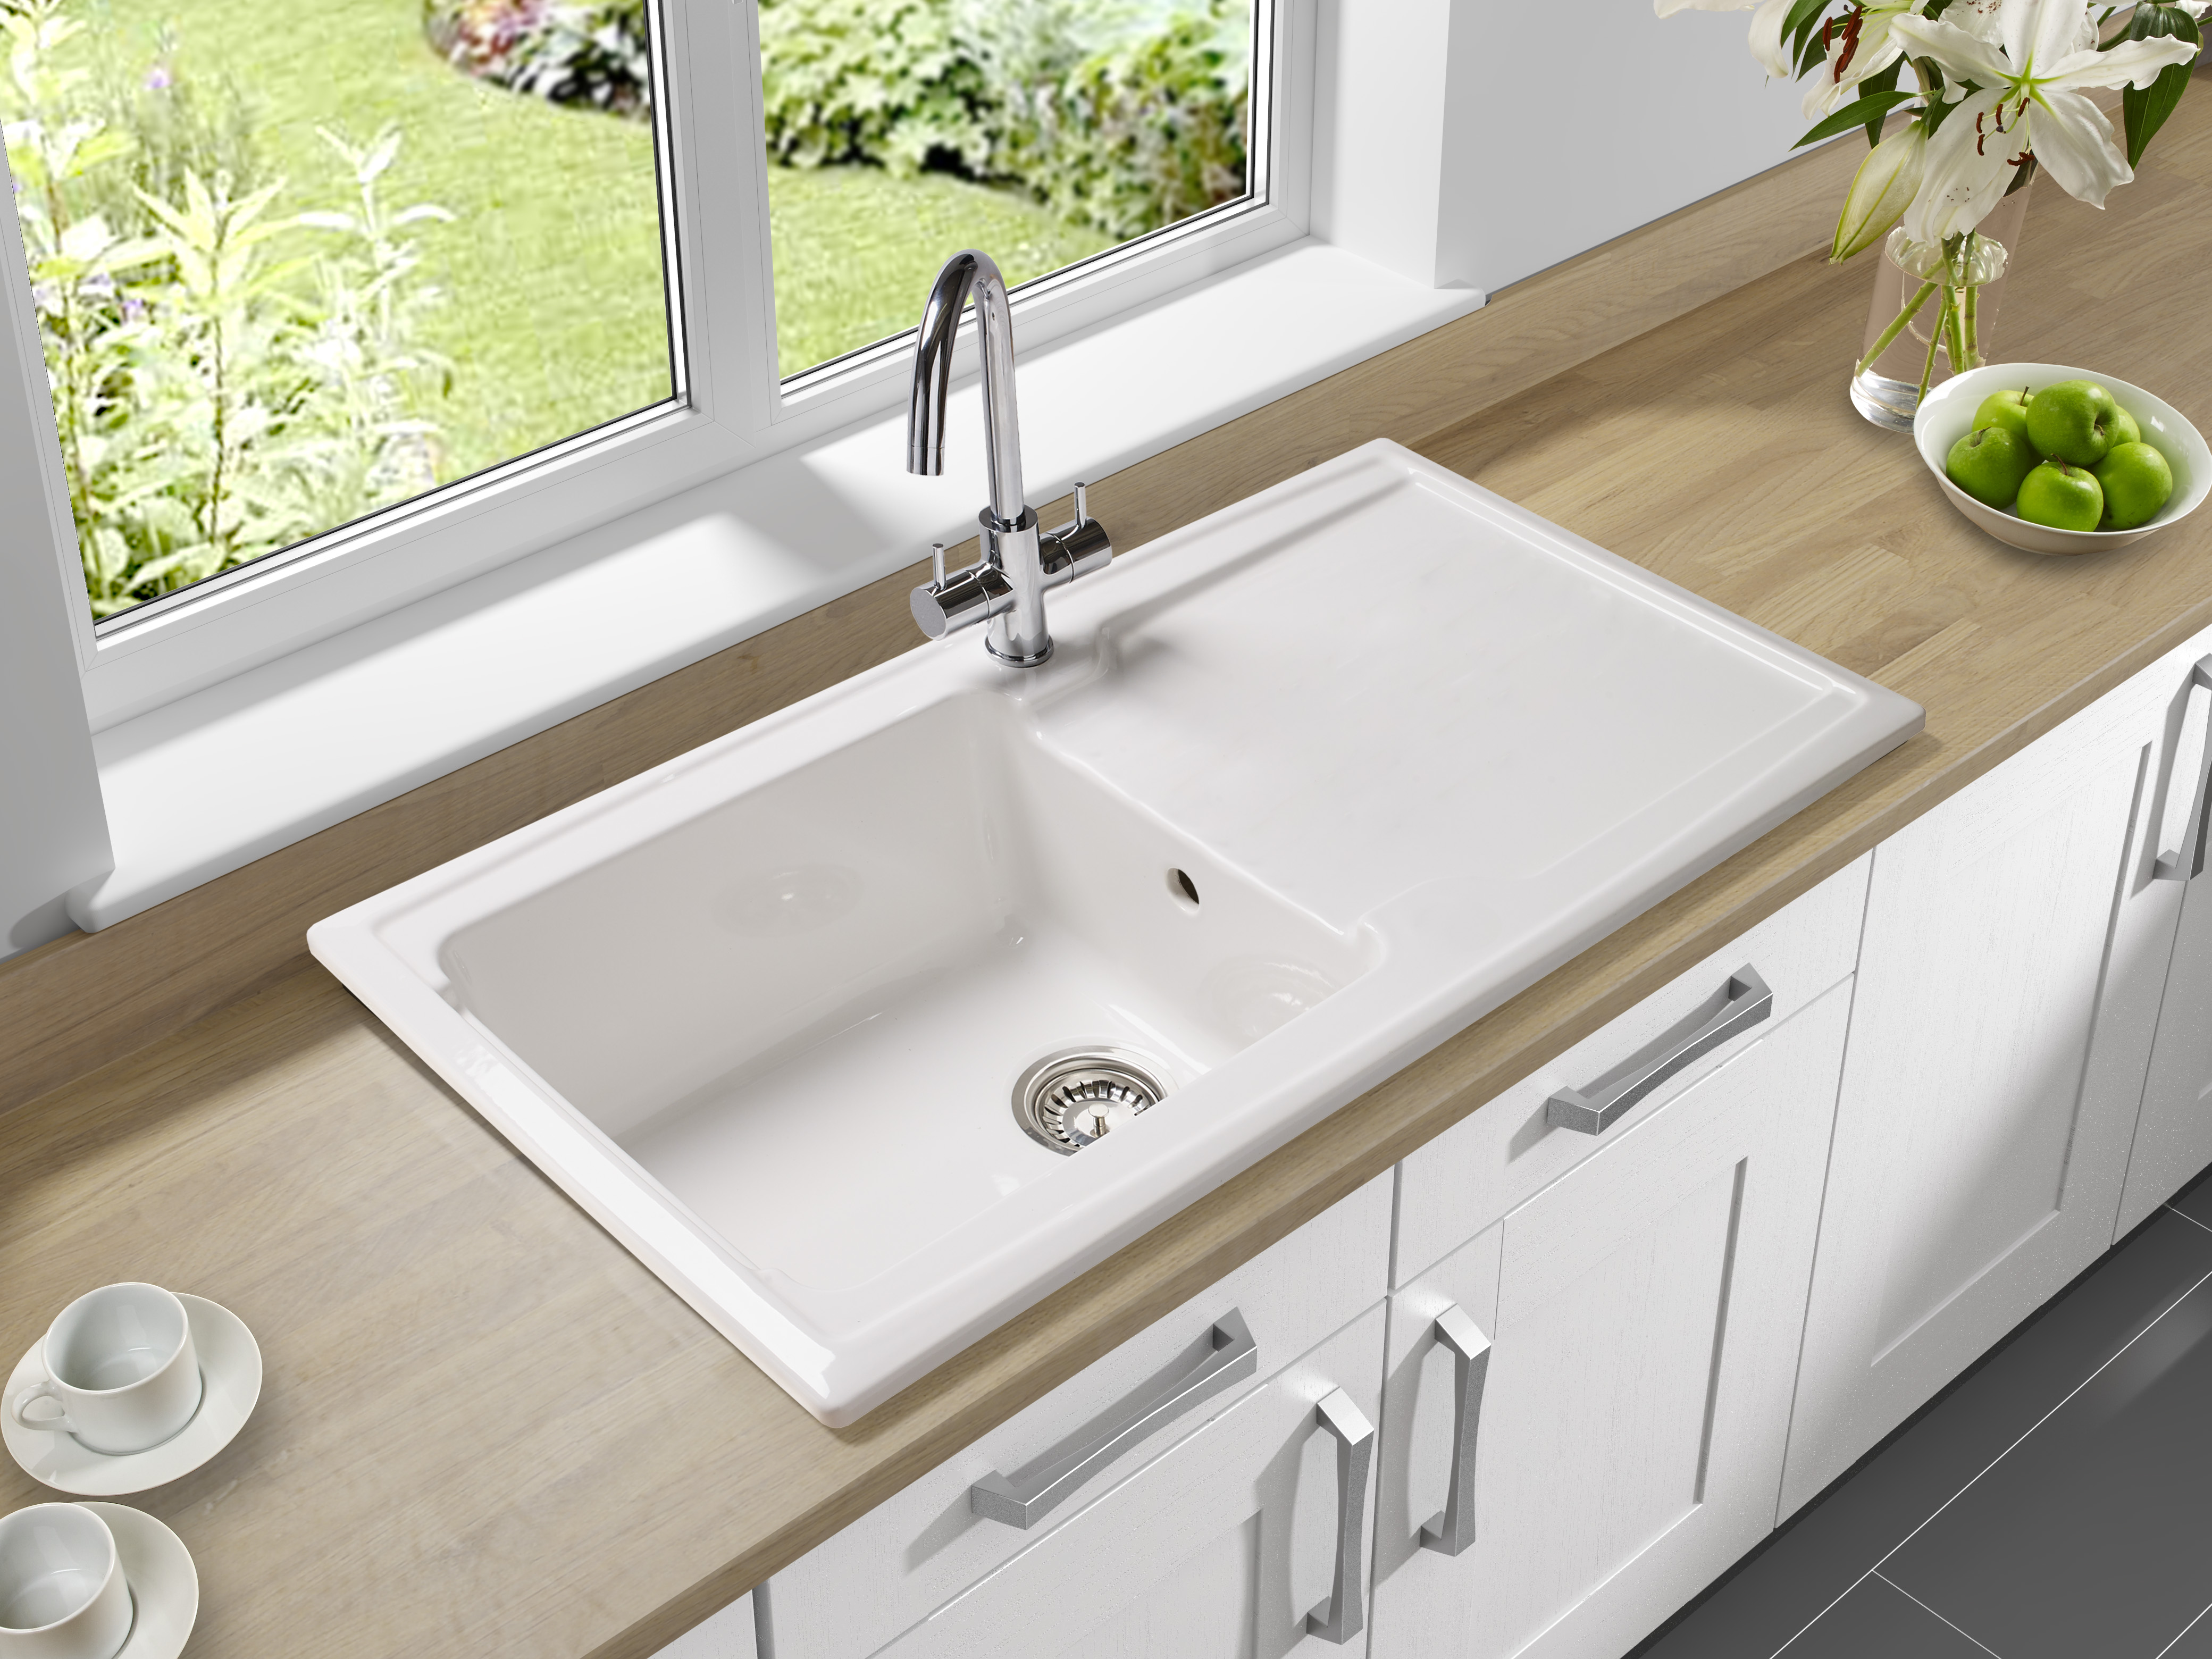 Ceramic Sink Vs Stainless Steel Inspiration - Lentine Marine Porcelain Vs Stainless Steel Sink